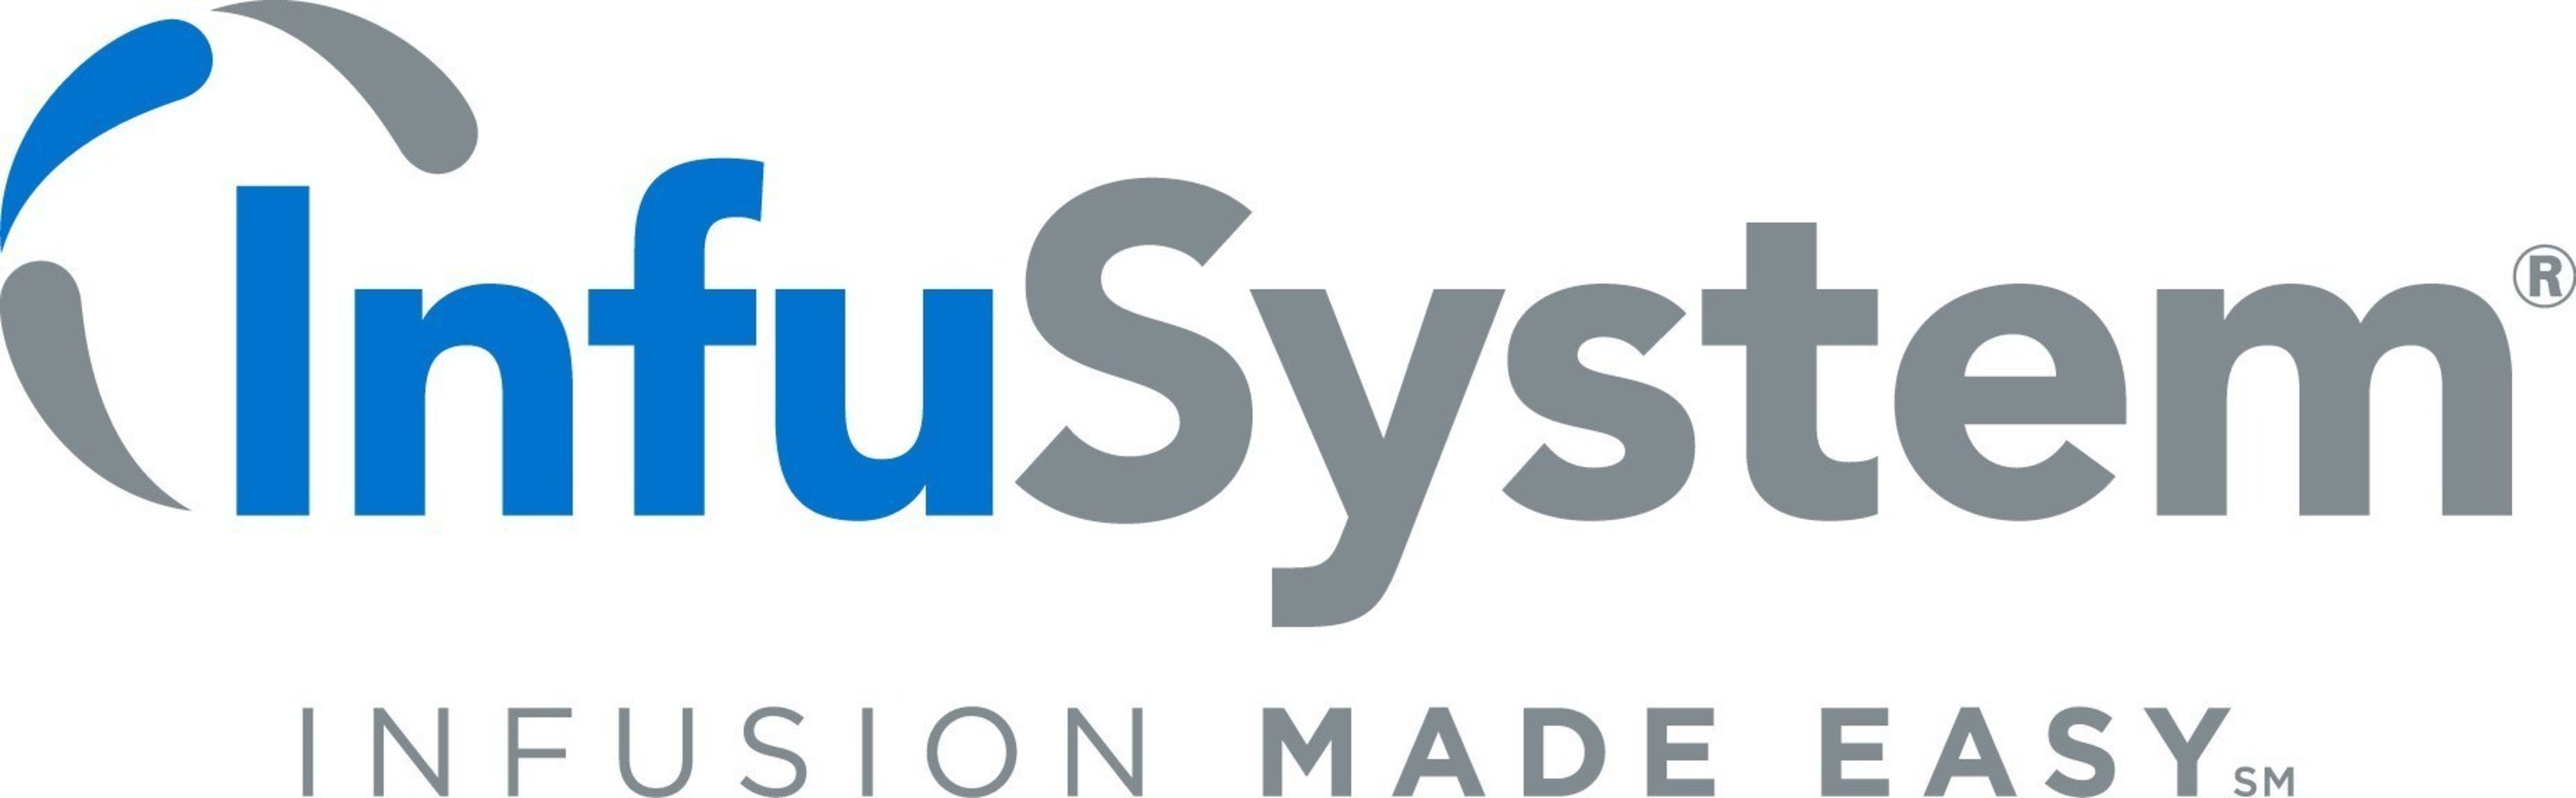 Image result for infusystem logo